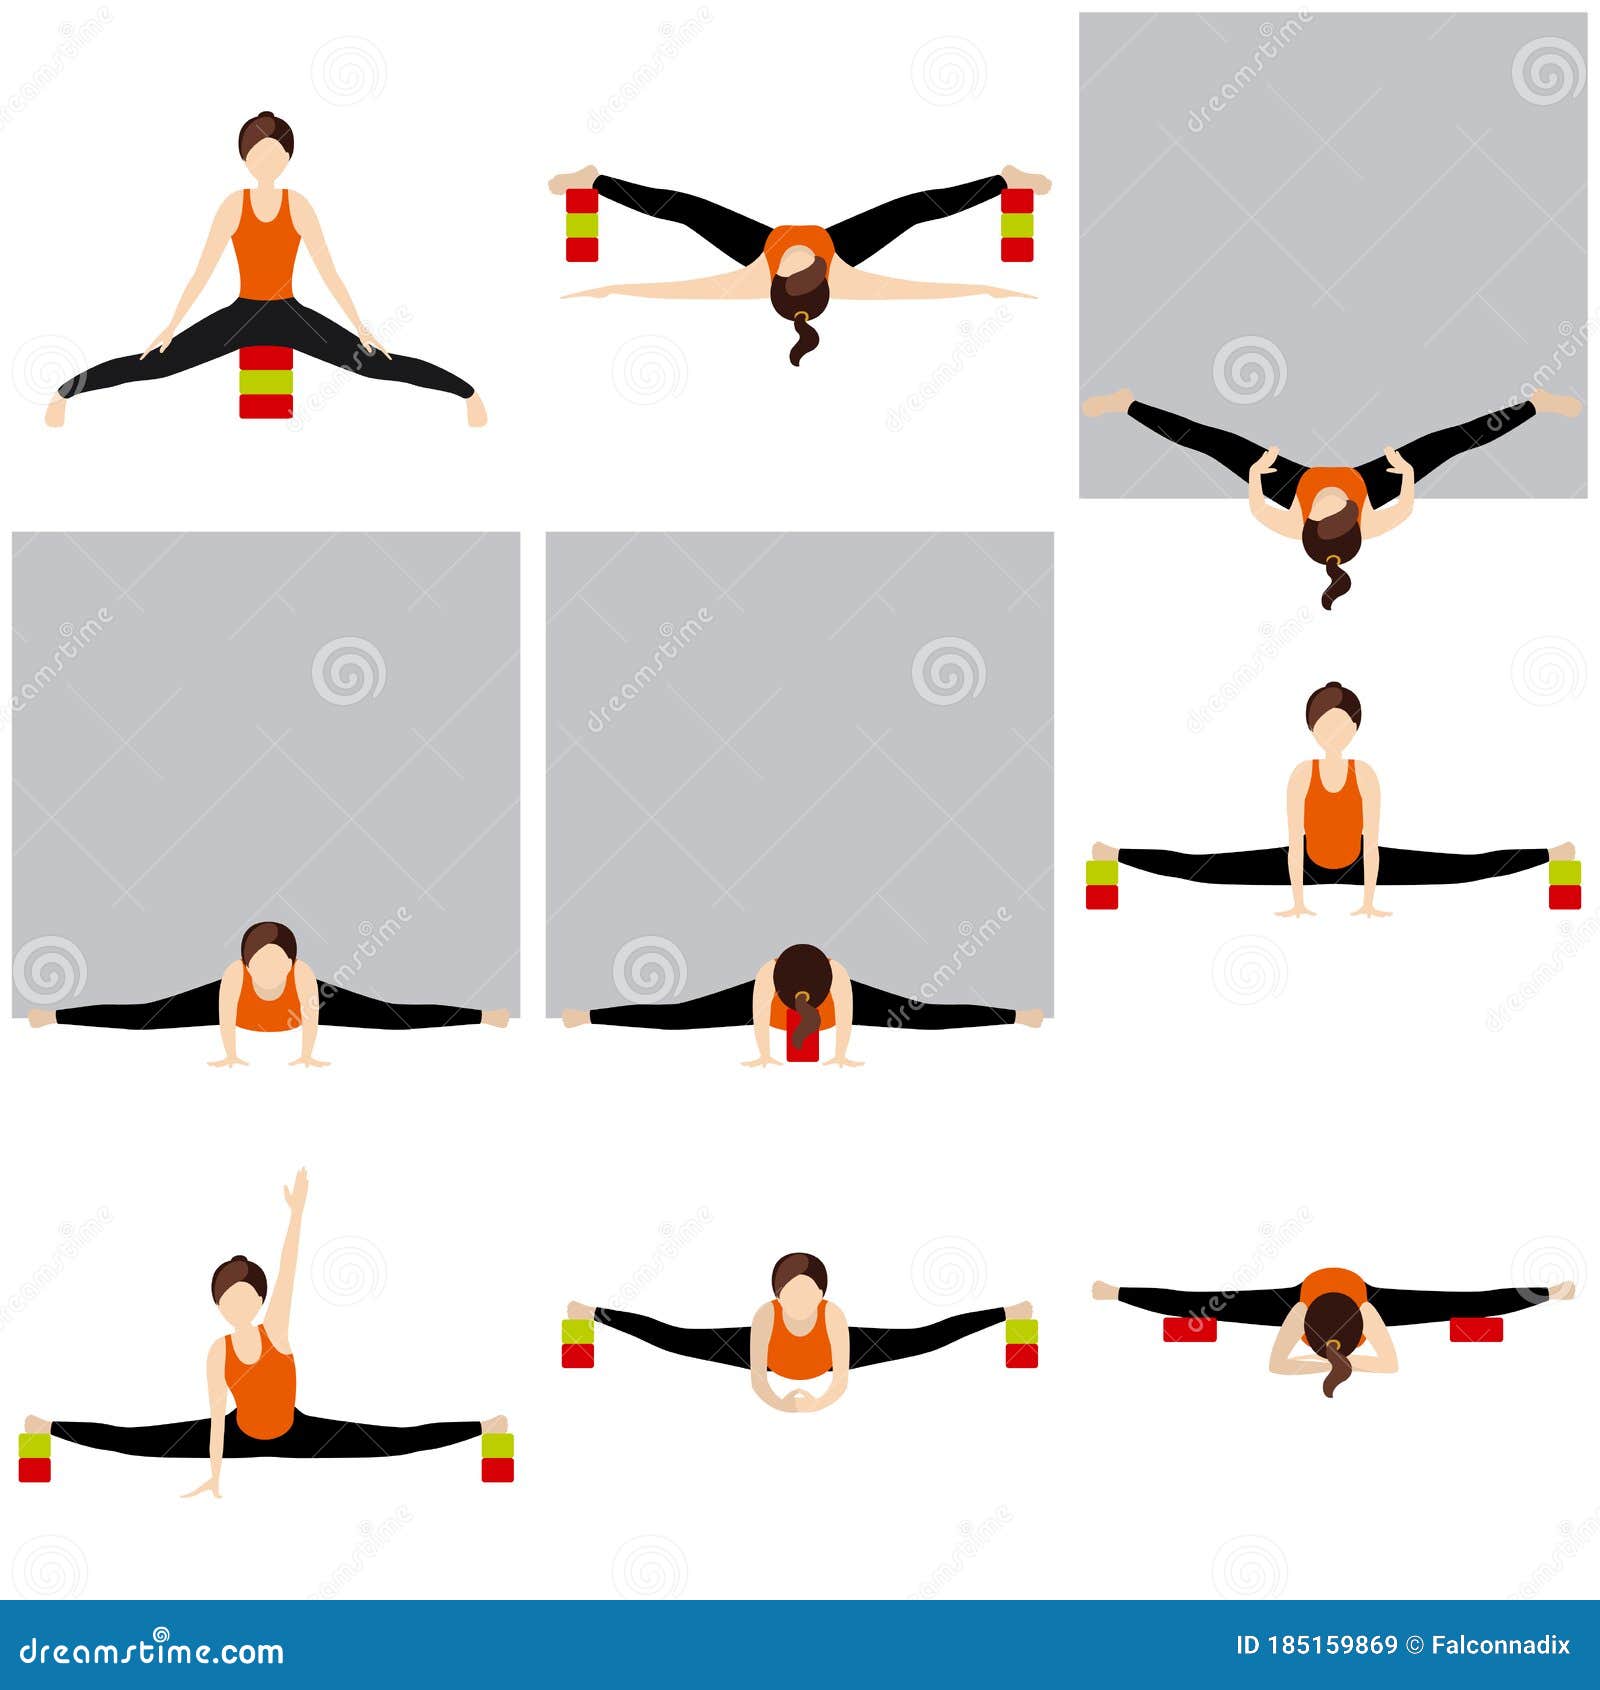 https://thumbs.dreamstime.com/z/divisi%C3%B3n-media-asanas-de-yoga-con-bloques-y-una-pared-mujer-estilizada-que-practica-estiramientos-utiler%C3%ADa-185159869.jpg